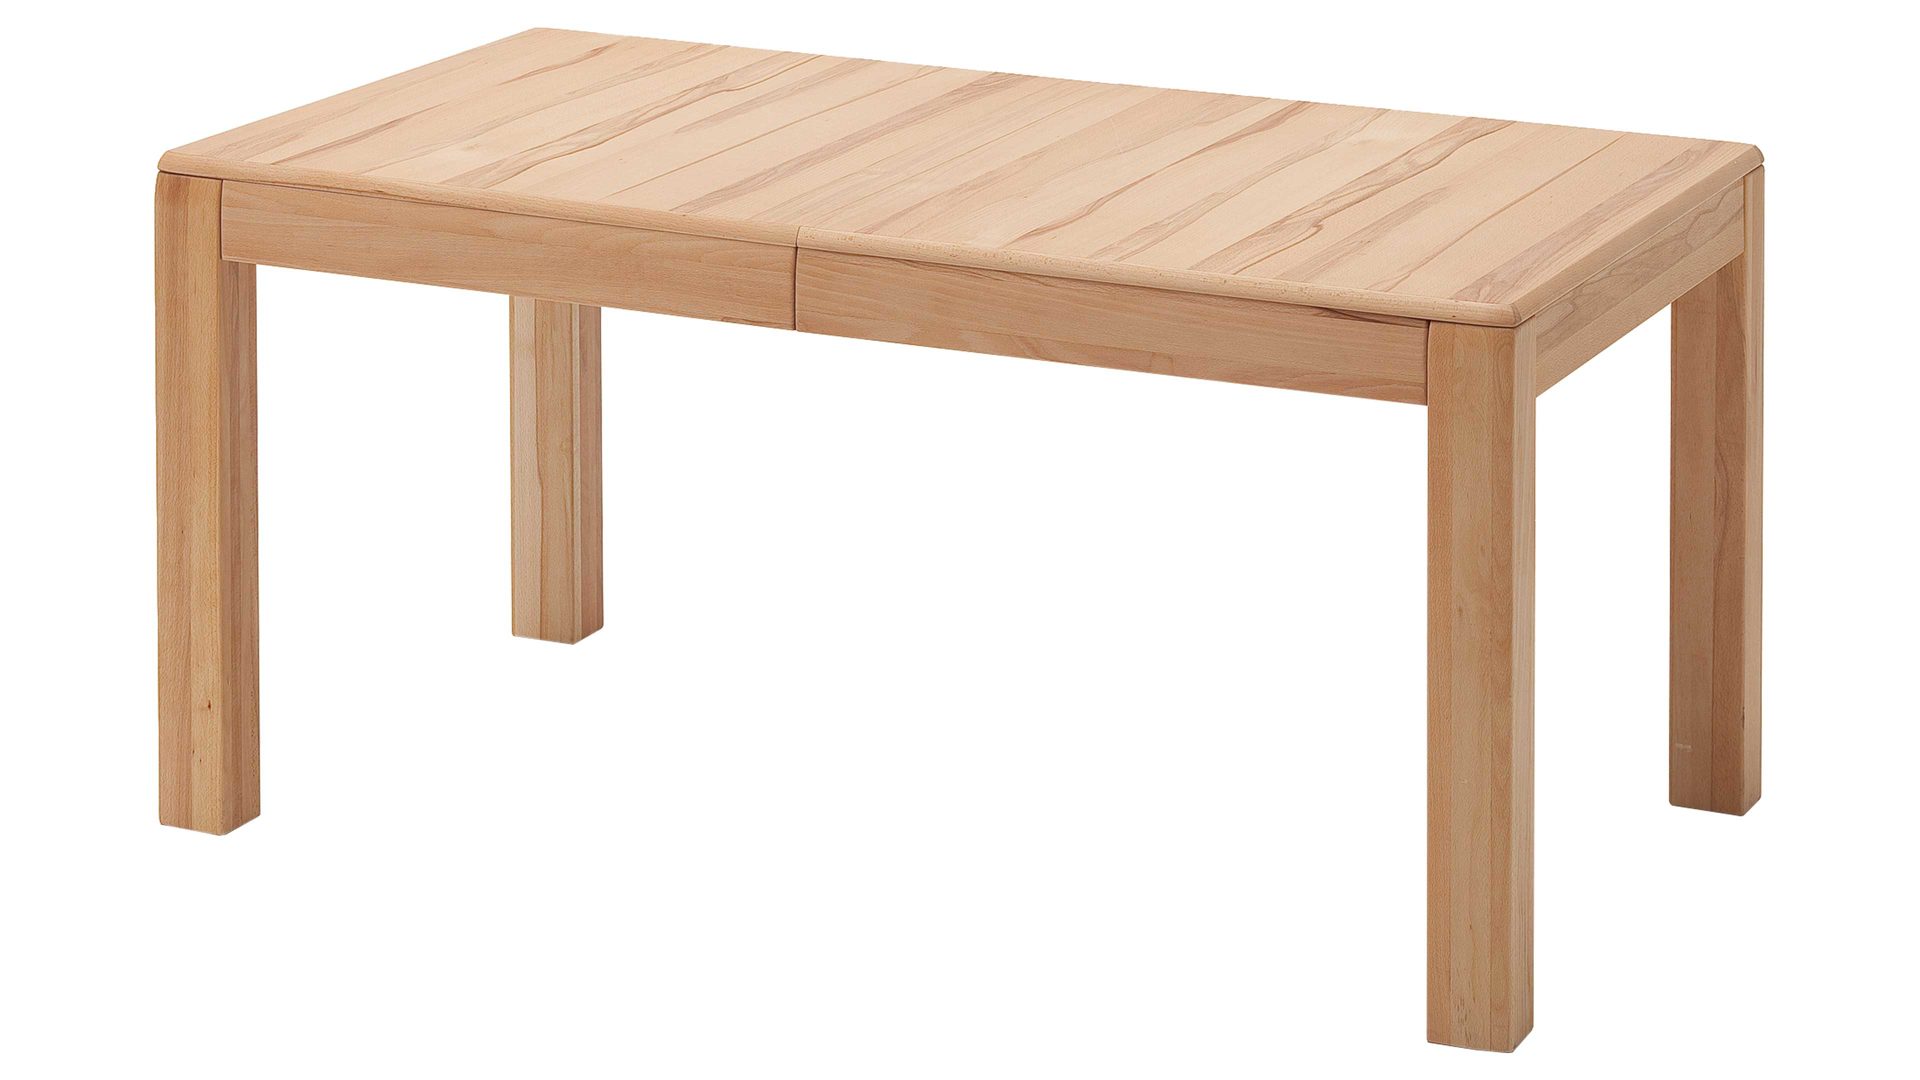 Auszugtisch Mca furniture aus Holz in Holzfarben Wohnprogramm Sena - Auszugtisch als Esstisch geölte Kernbuche – ca. 160-260 x 90 cm